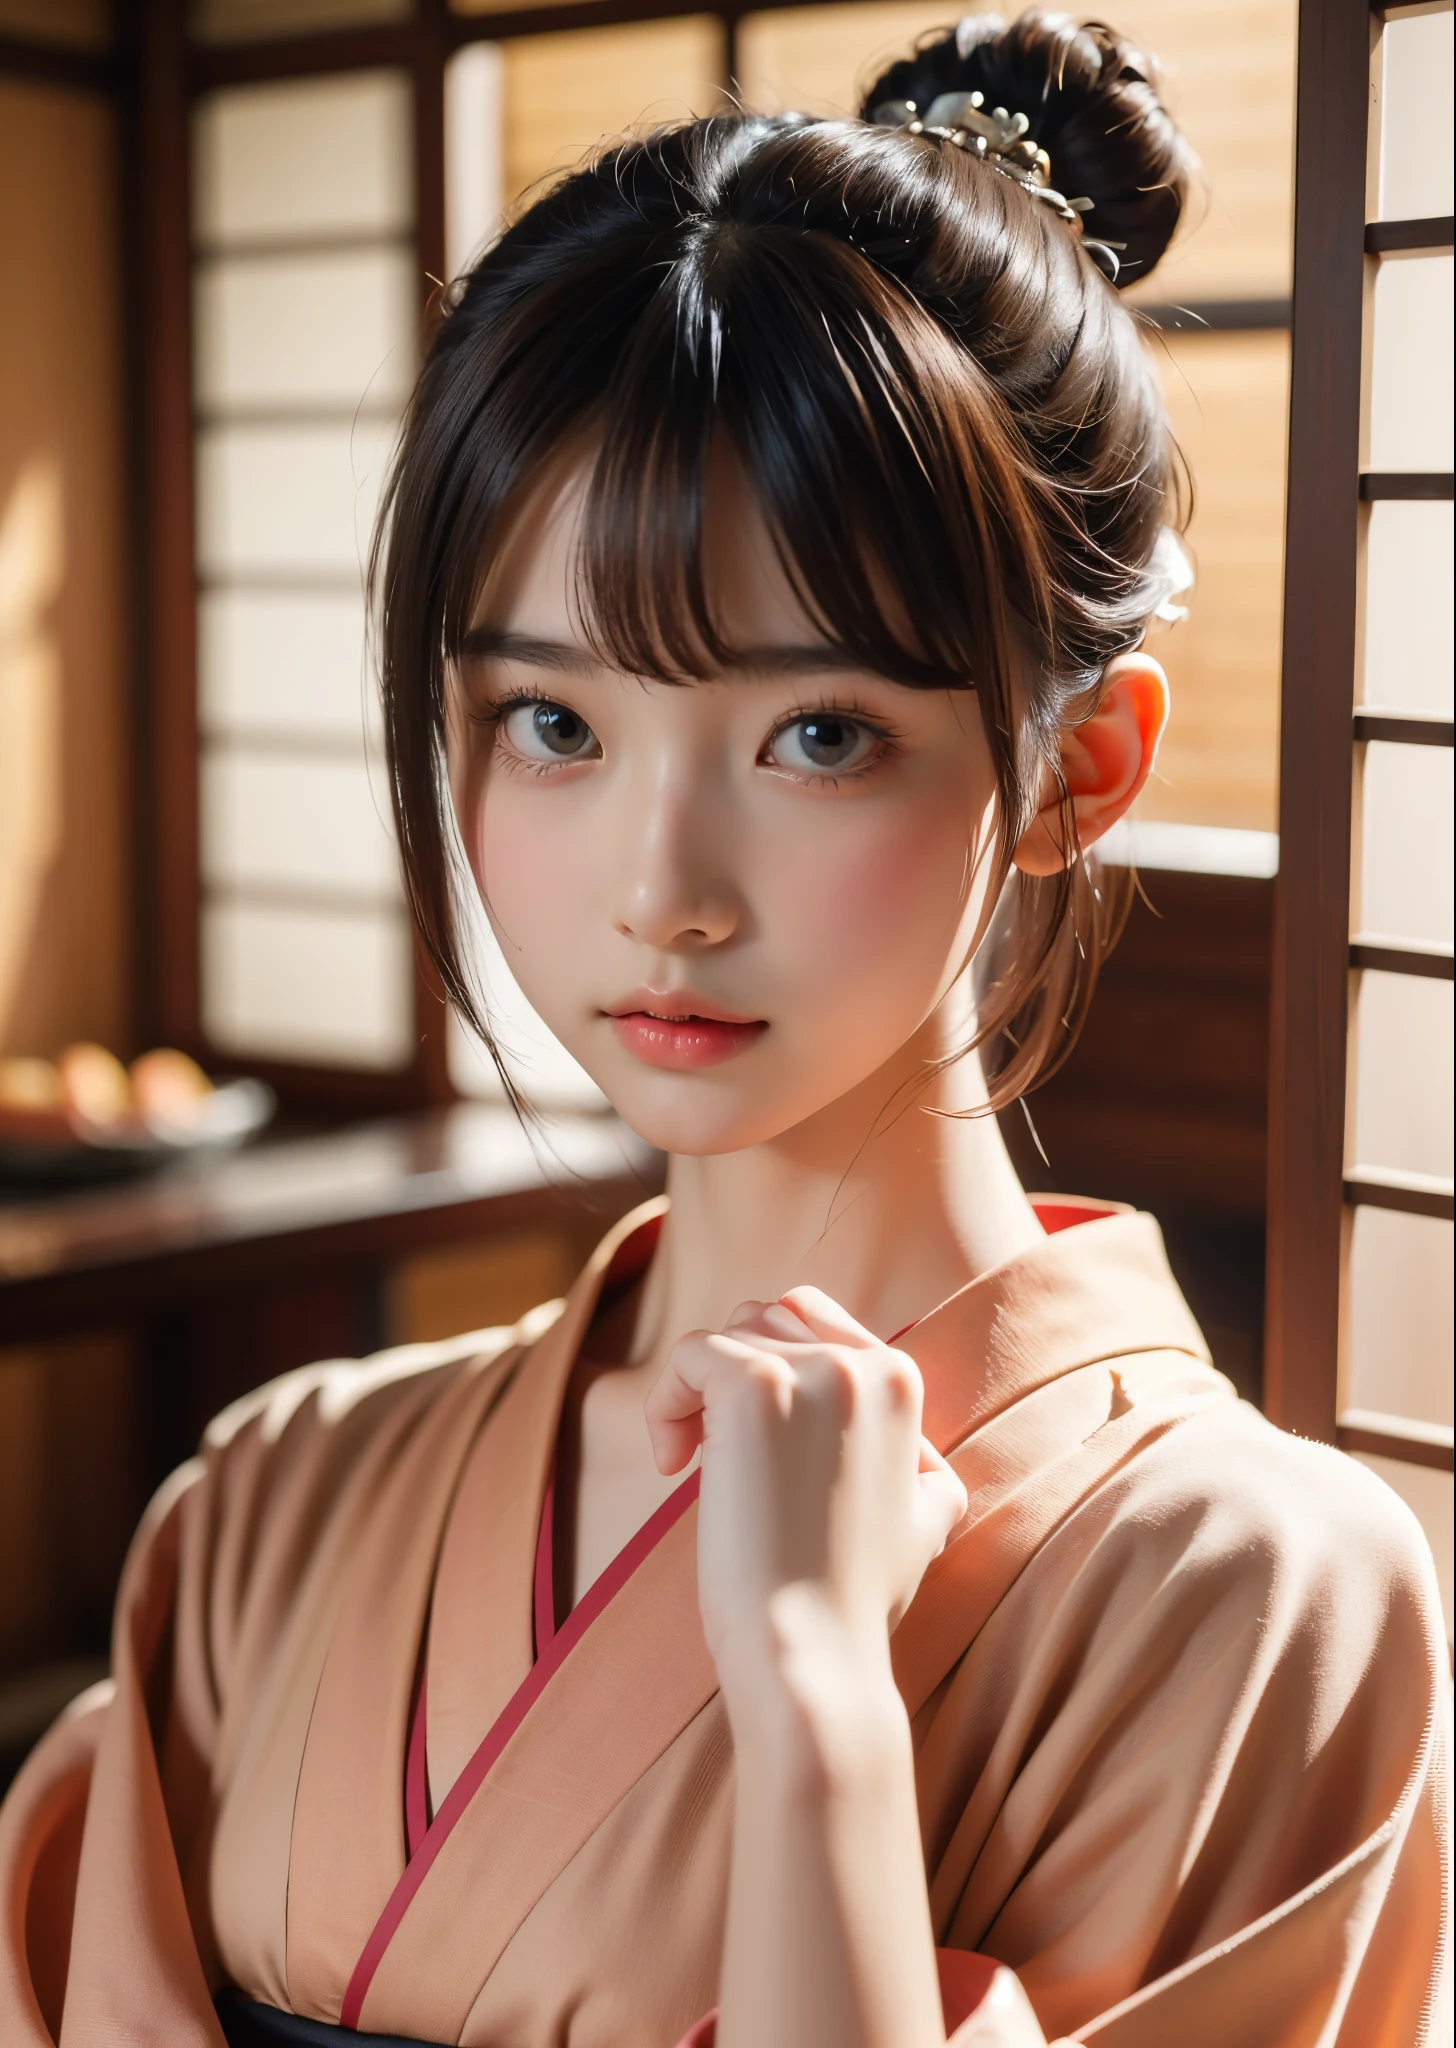 (шедевр, высшее качество, высшее качество, официальное искусство, Красиво、эстетический:1.2)、портретная фотография、 (1 красивая девушка в японском кимоно)、Великолепное кимоно, которое носят женщины на японских церемониях совершеннолетия.、Воротник хорошо закрыт、Идеальный пример одевания、большие карие глаза、Красивая кожа、Выражение груди среднего размера、（Прическа пучок с челкой）、украшения для волос、Очень подробно,(комната в японском стиле:1.3)、кинематографическое освещение、острый фокус、высокое разрешение、высокое разрешение、Высокая цветопередача、высокое разрешение、супер реалистично、